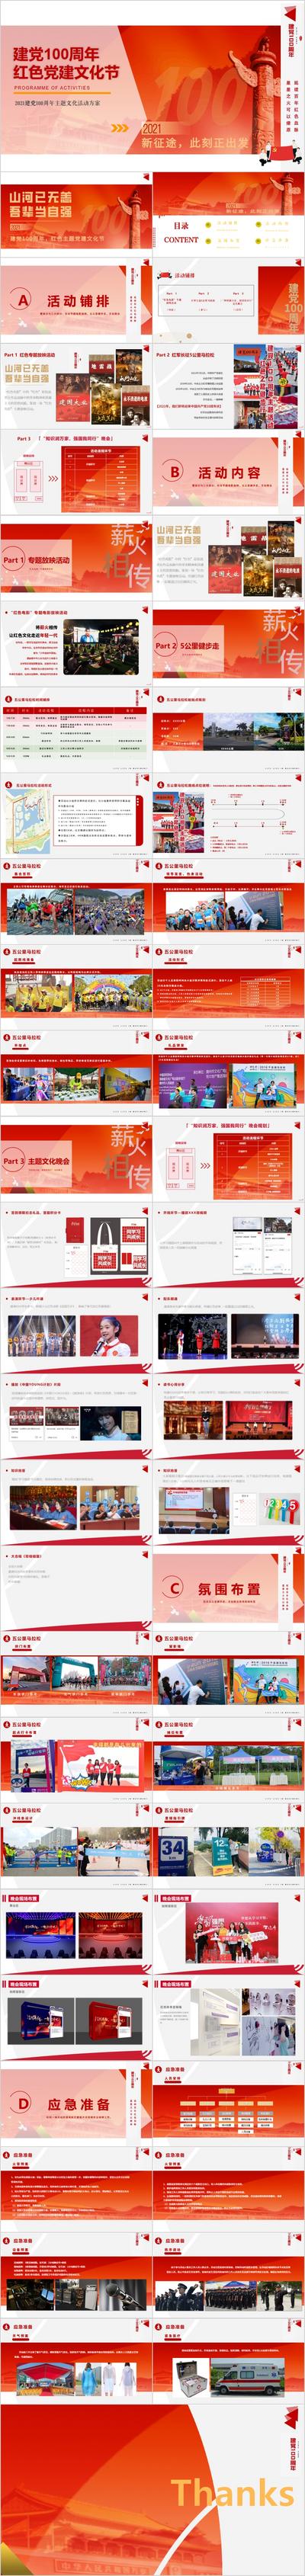 南门网 PPT 党建 七一 101 100 周年 红色 文化 活动方案